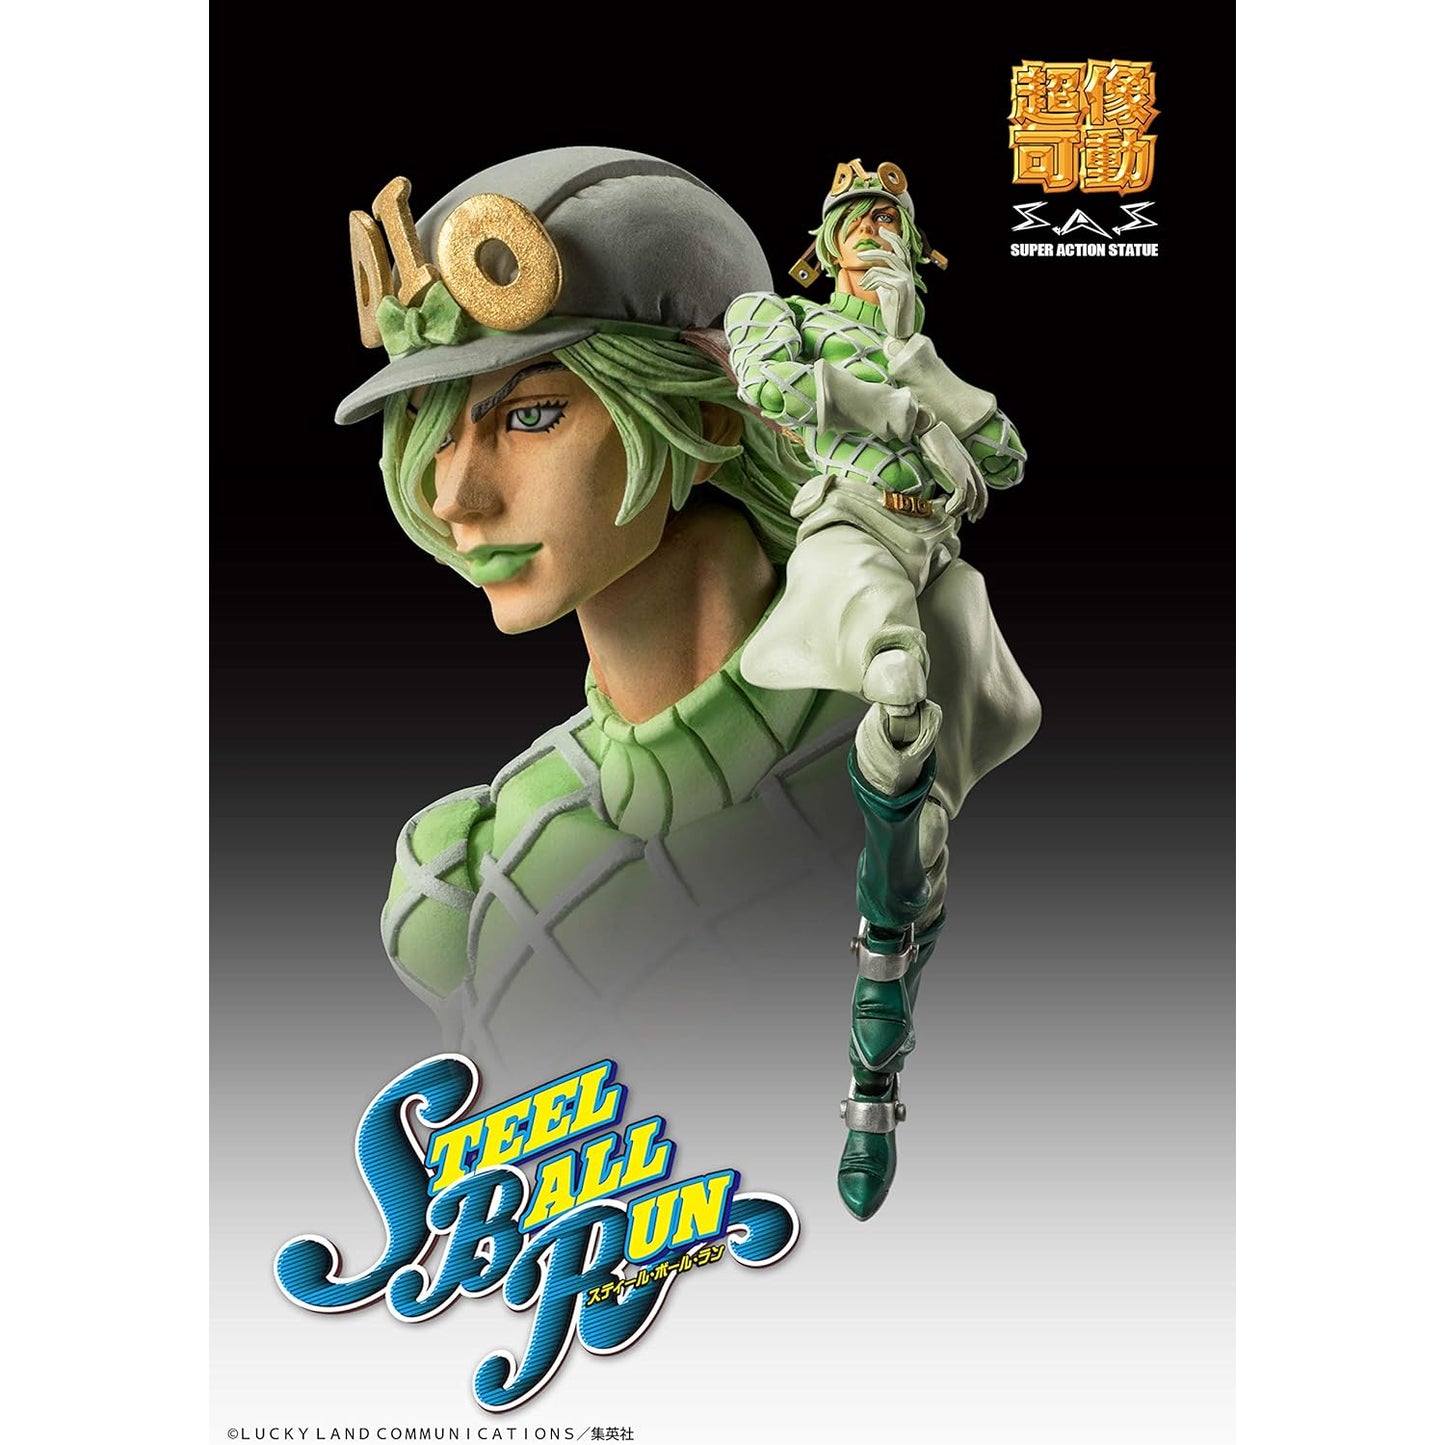 JoJo's Bizarre Adventure Super Action Estatua Figura 7ma parte Steel Ball Run Diego Brando SAS Japón NUEVO